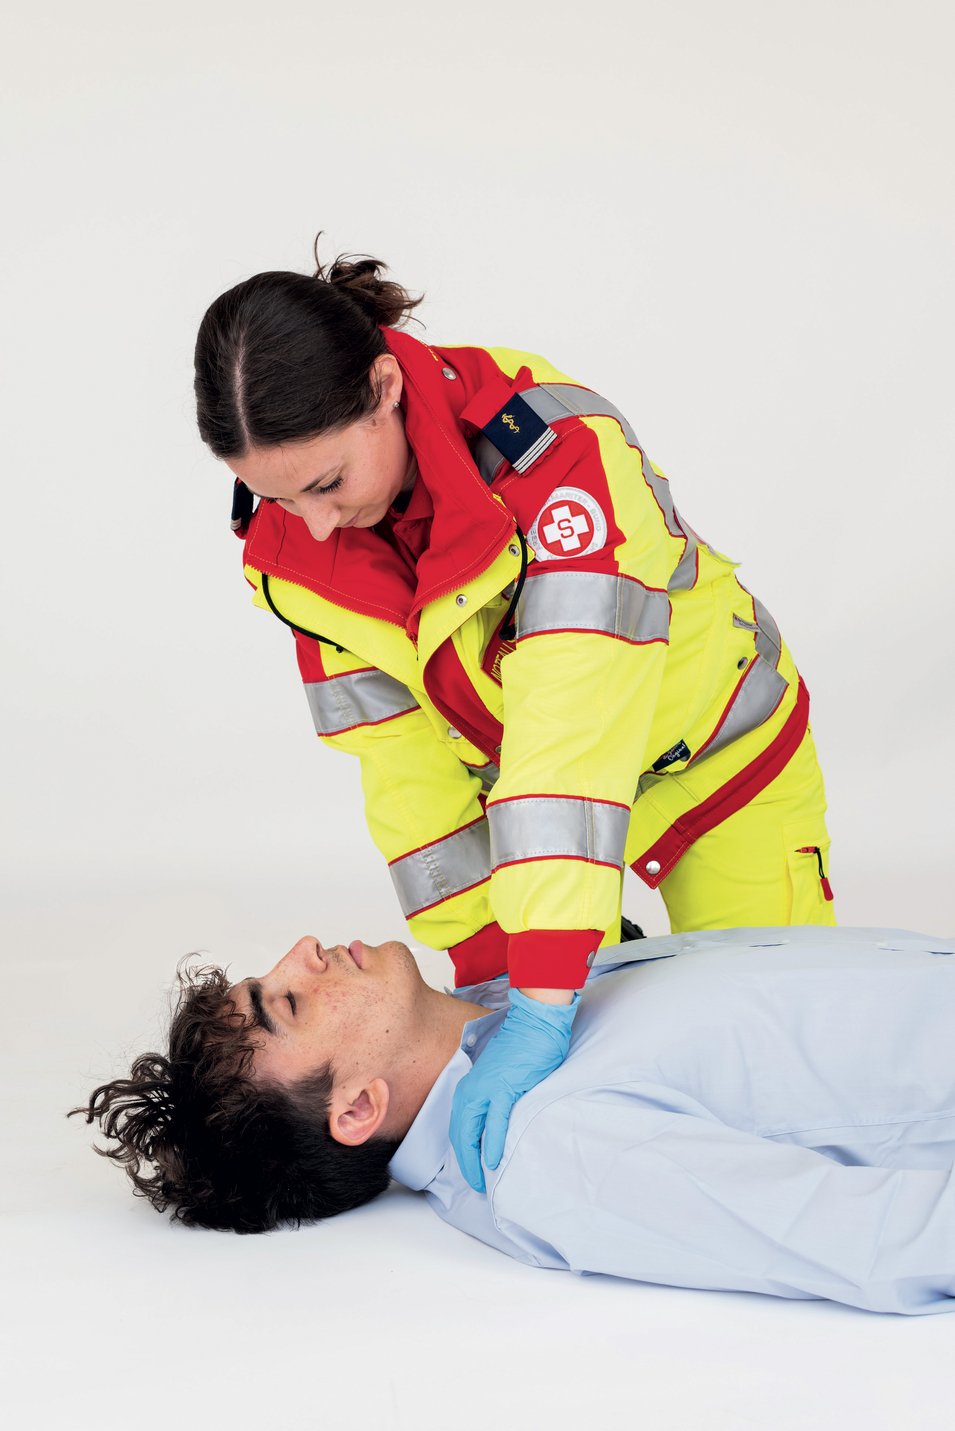 Sanitäterin bringt Patient in Position für Schocks mit dem Defibrillator